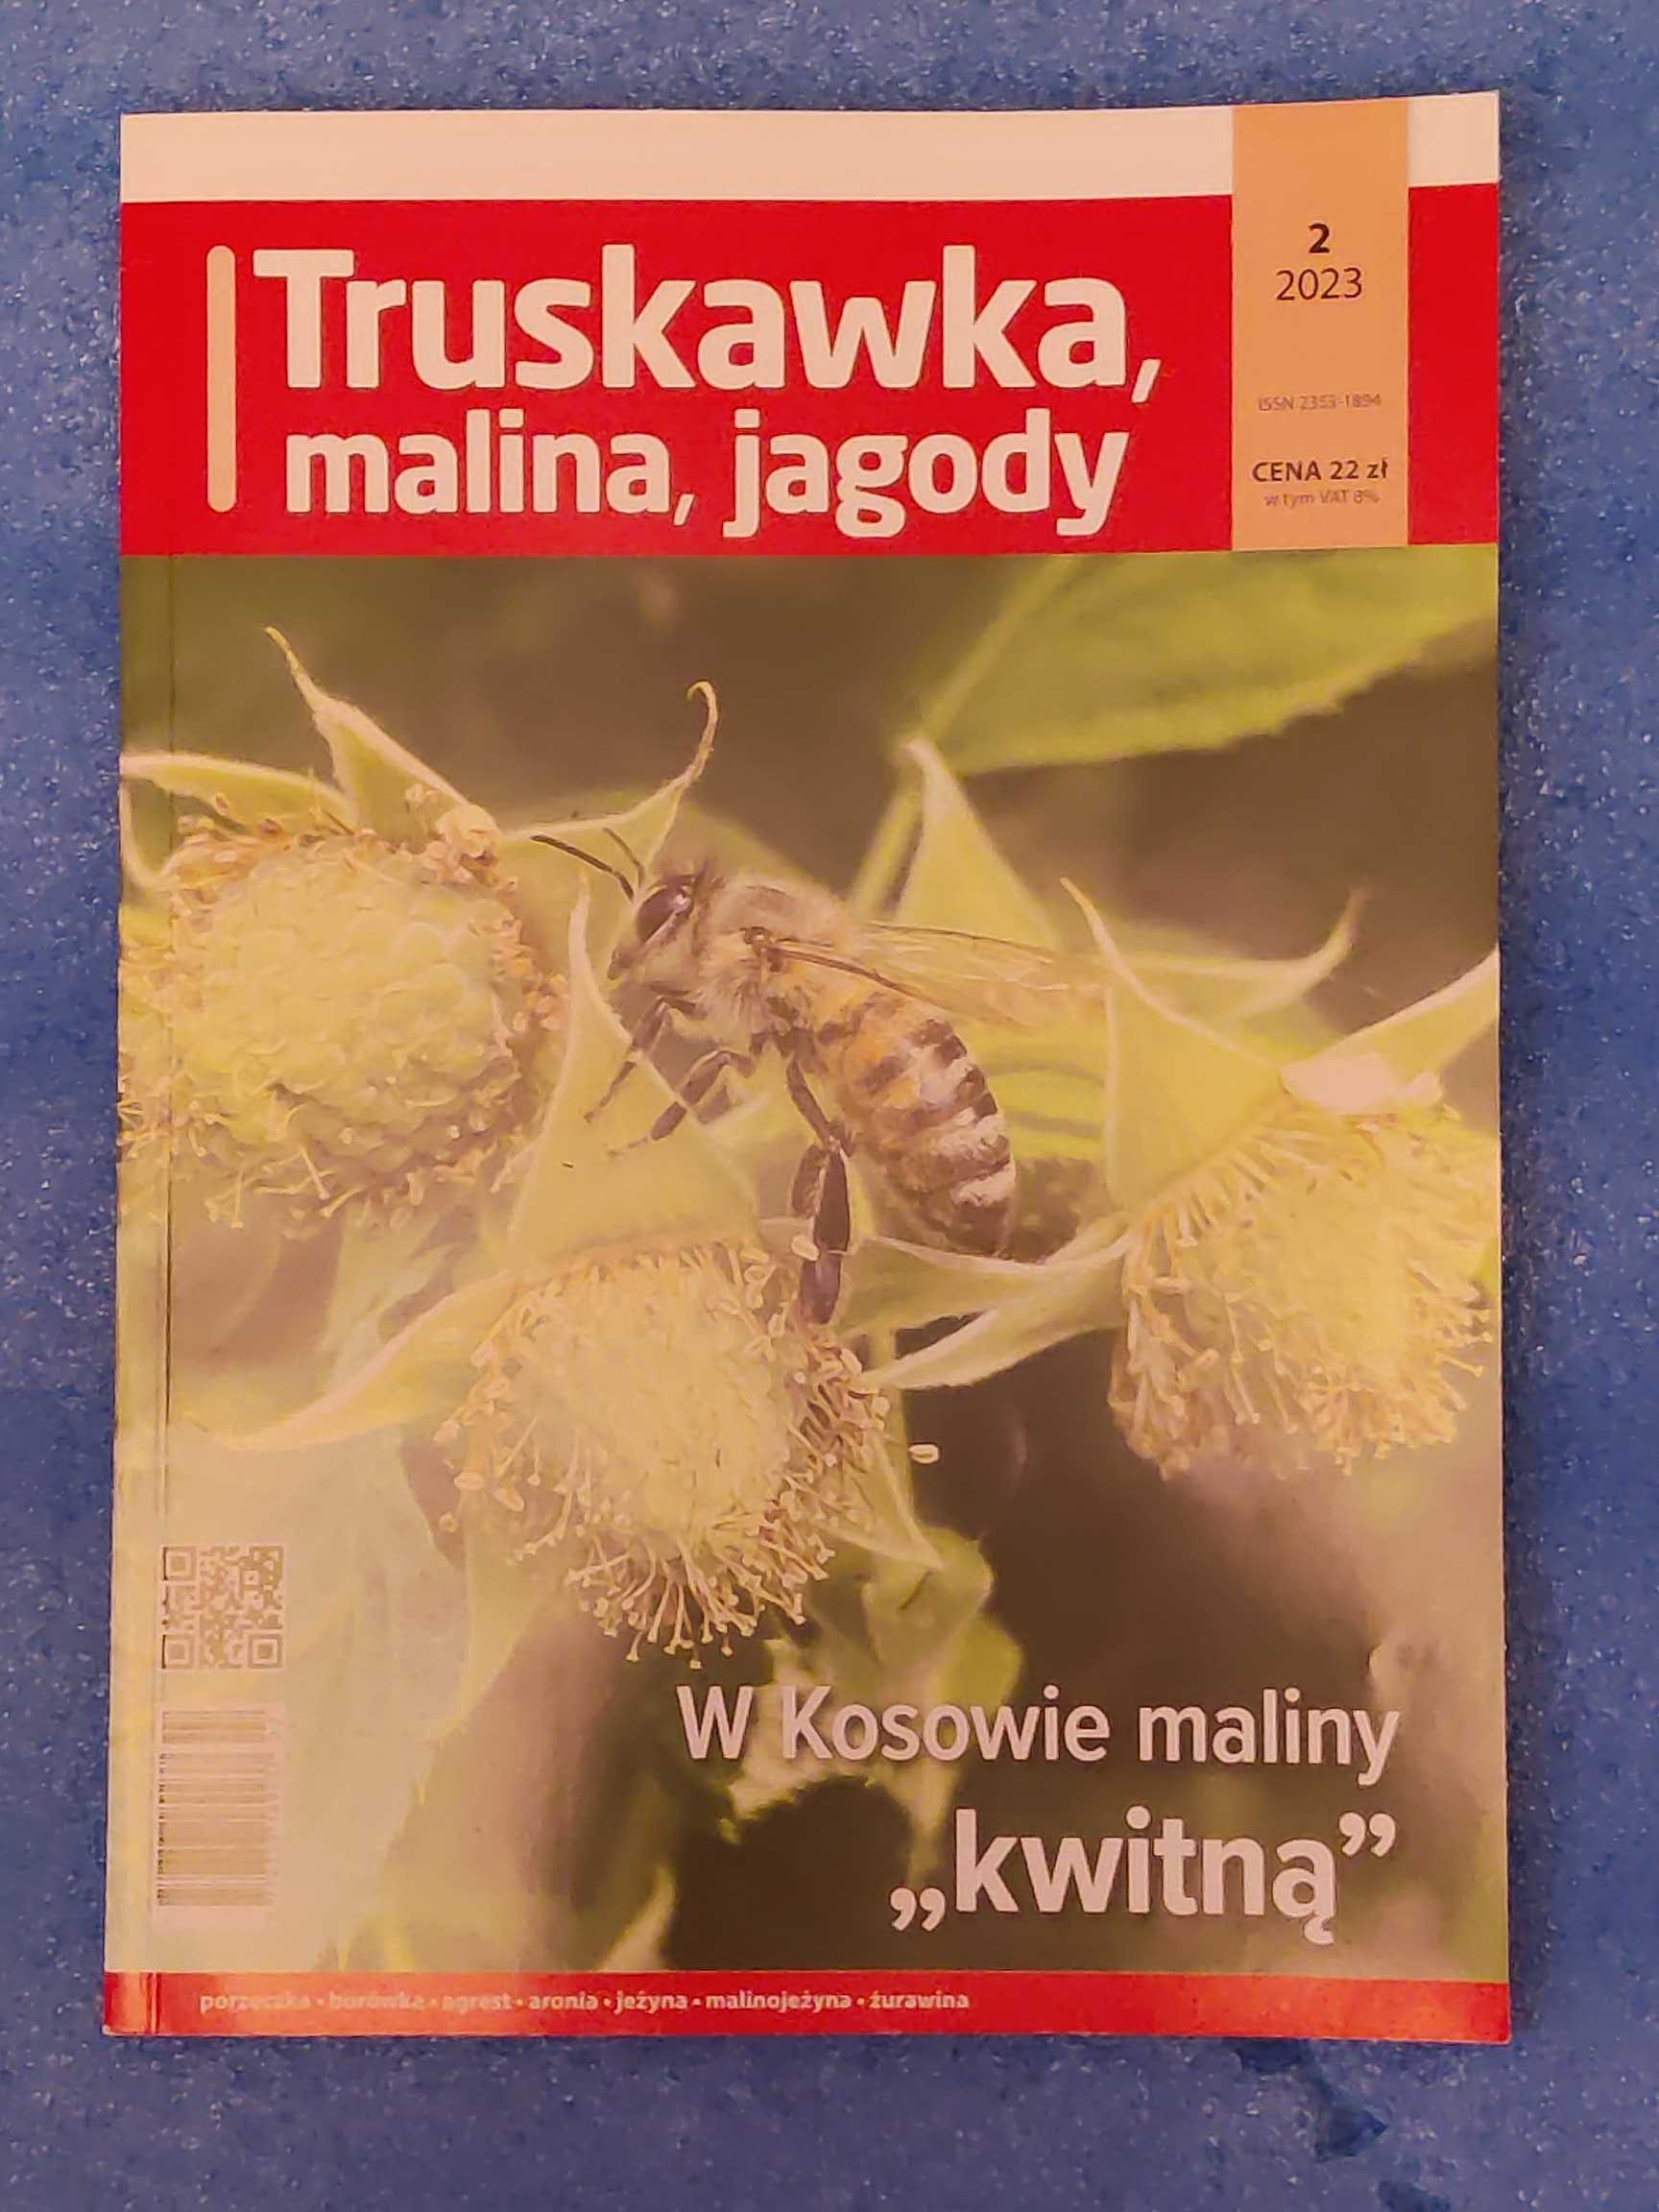 Truskawka Malina Jagody 2021, 2022, 2023